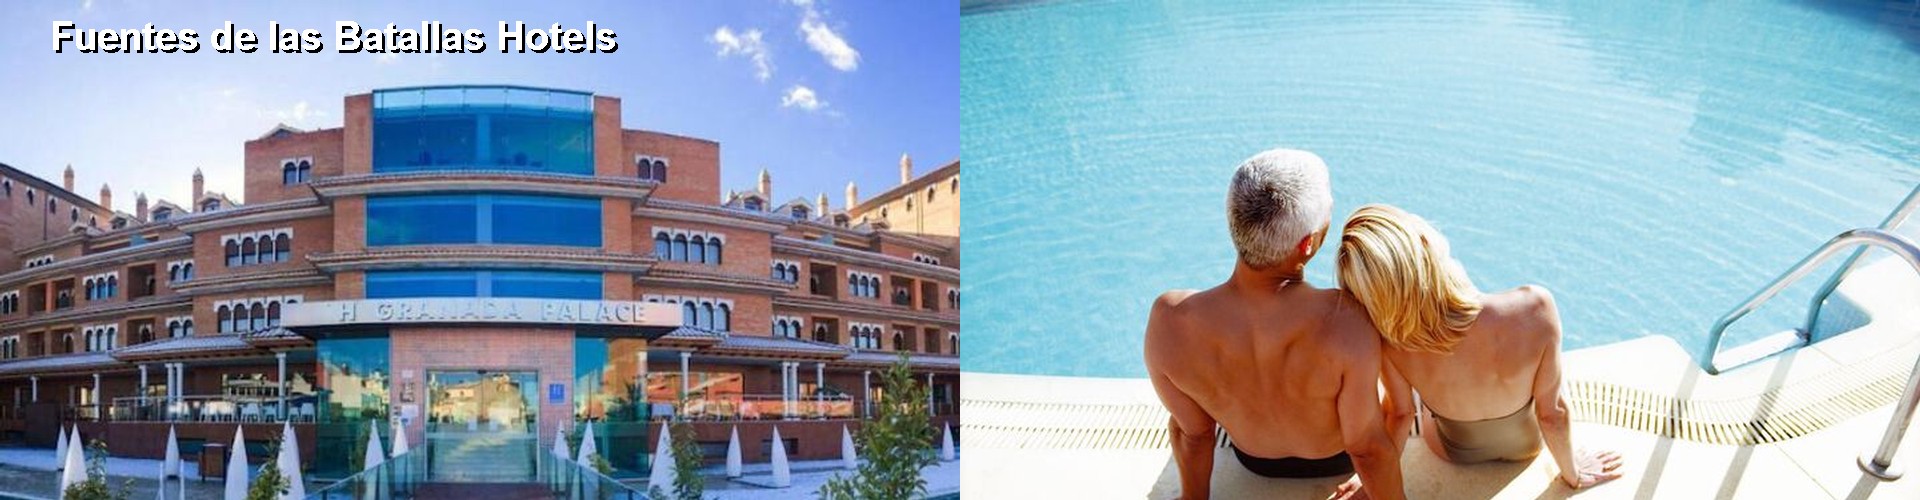 5 Best Hotels near Fuentes de las Batallas